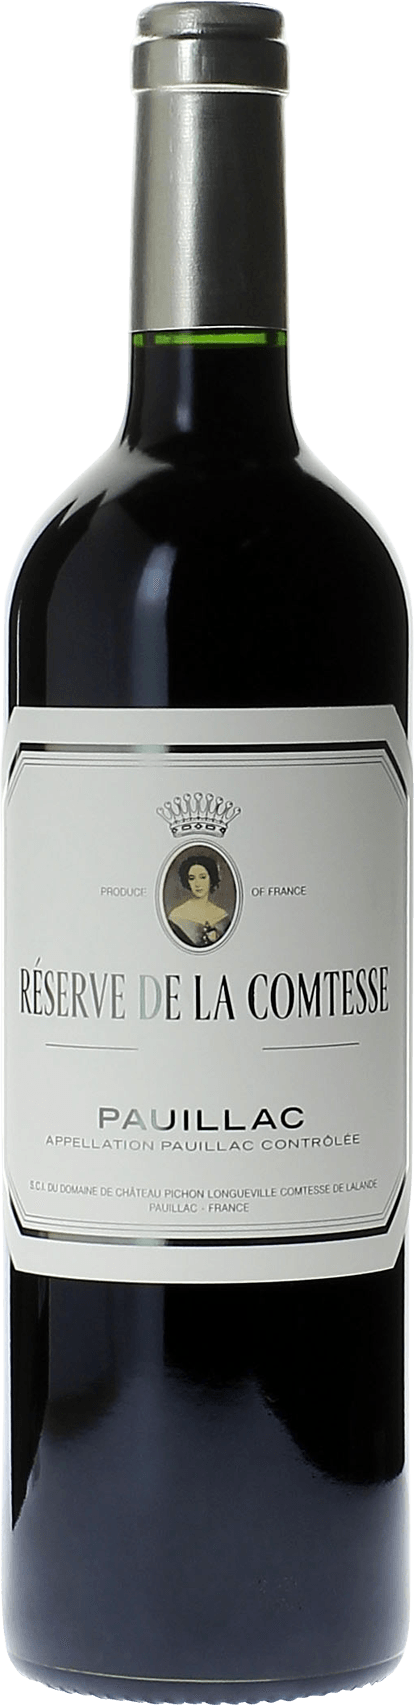 Reserve de la comtesse 2020 2nd Vin de Pichon Comtesse Pauillac, Bordeaux rouge